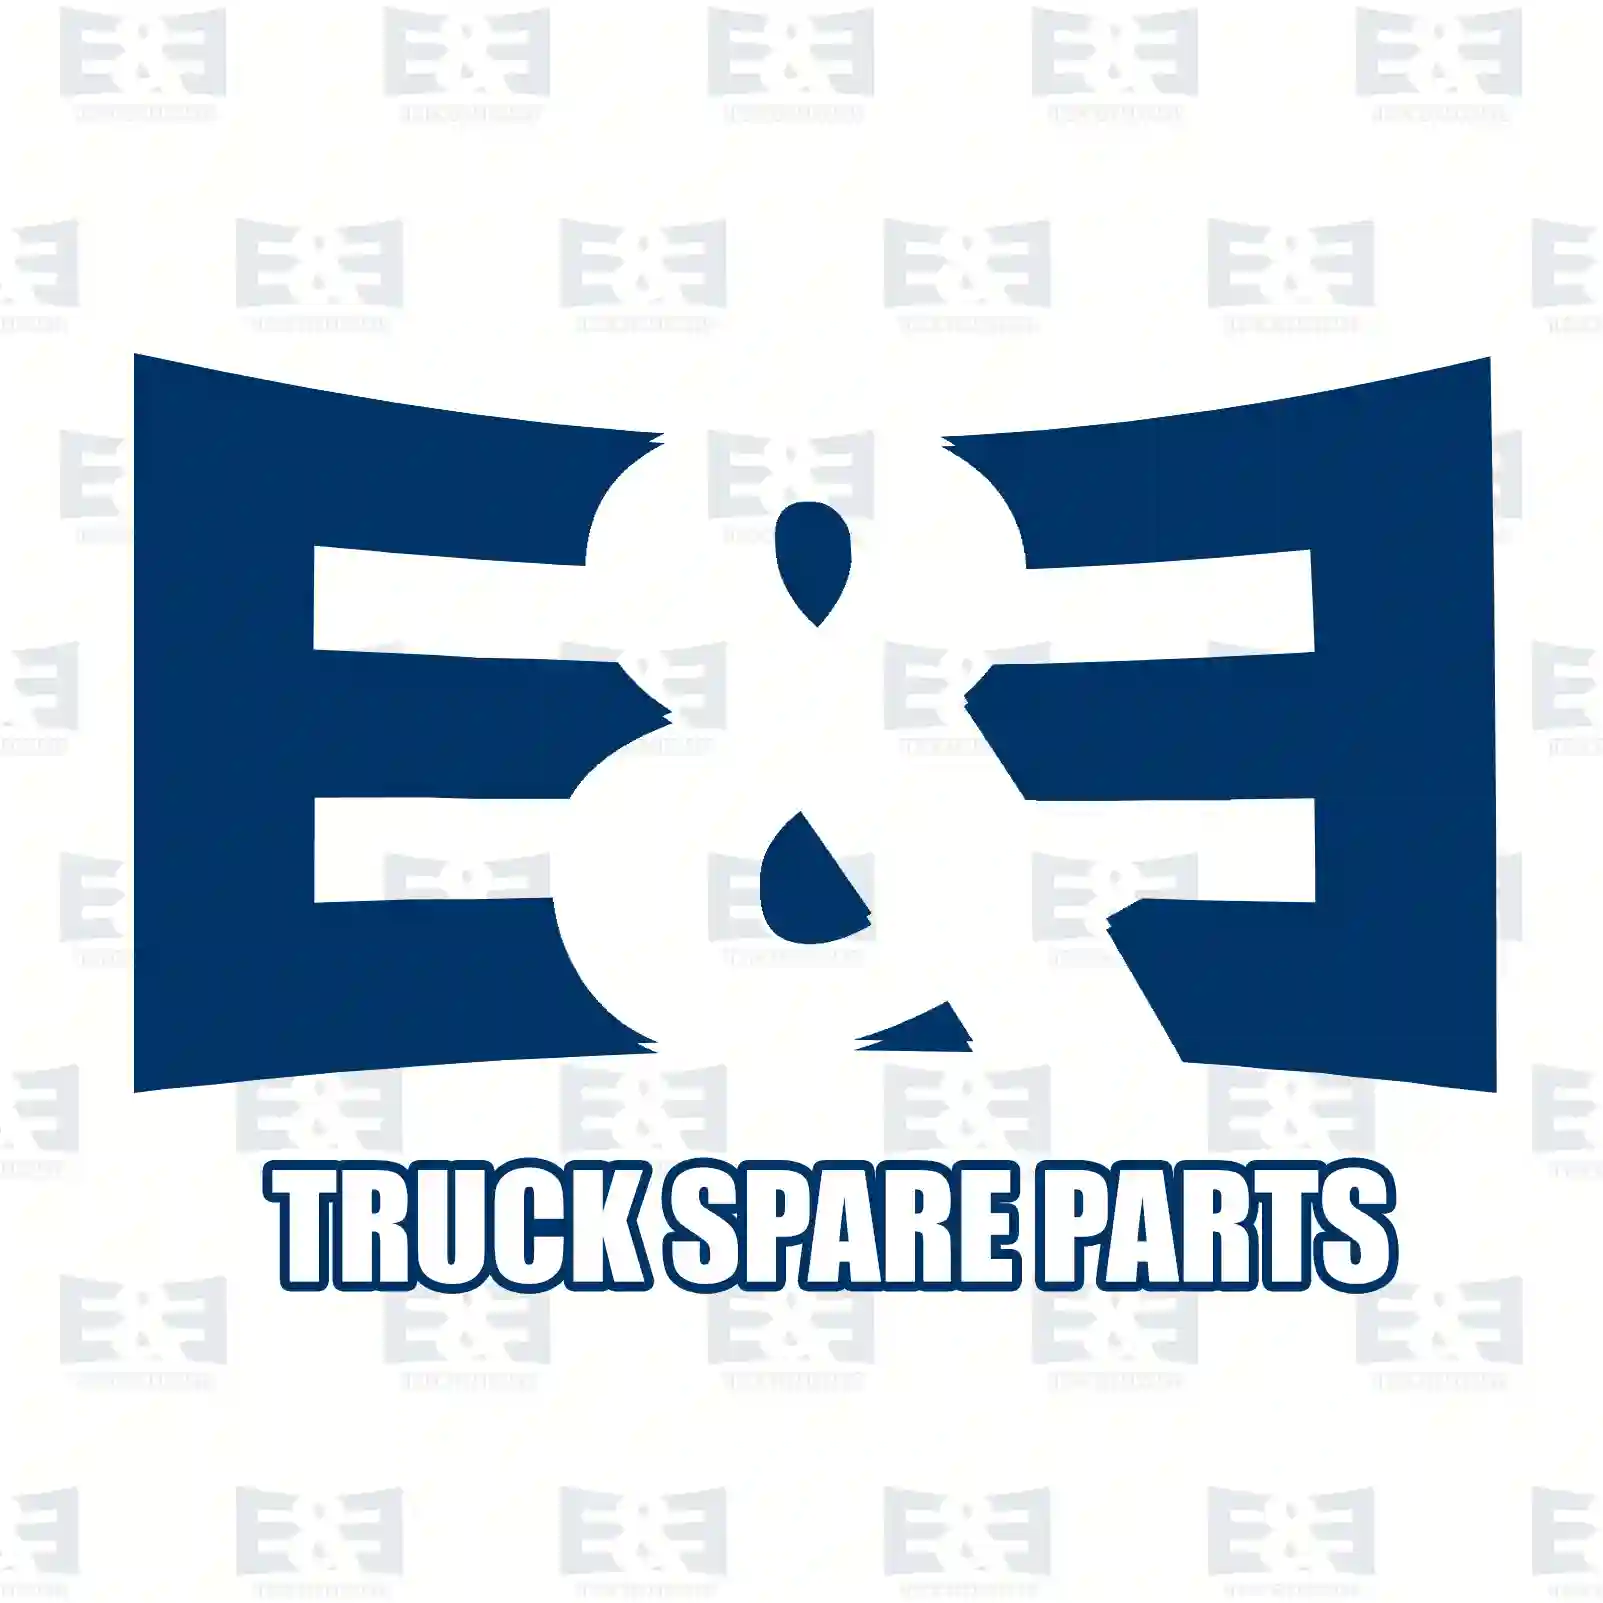 Compressor Piston, EE No 2E2297100 ,  oem no:0693175, 693175, 81541196016, 0001301117 E&E Truck Spare Parts | Truck Spare Parts, Auotomotive Spare Parts